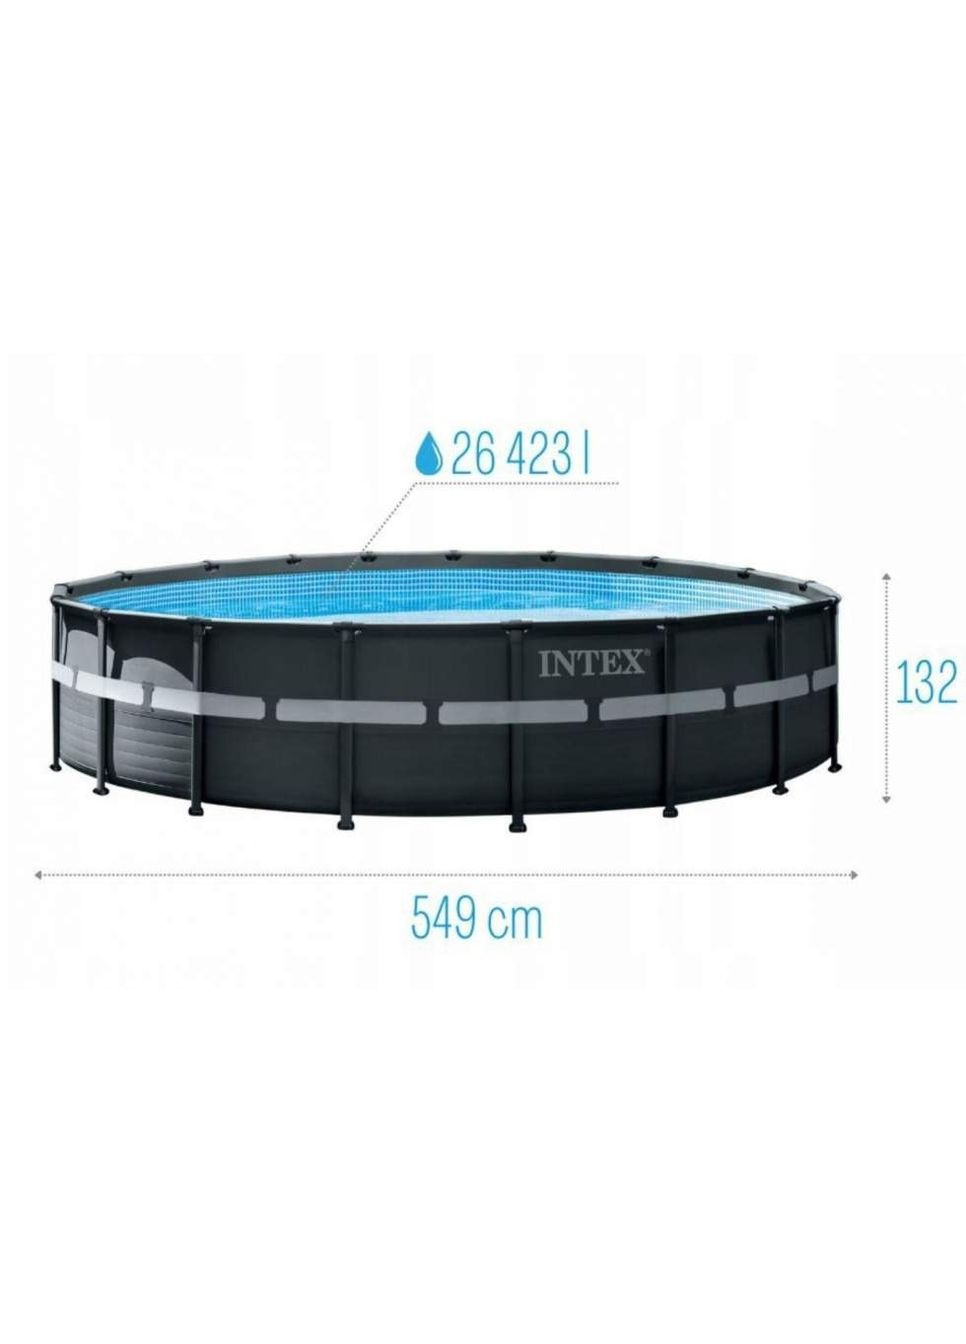 Круглый каркасный бассейн 26330 с лестницей, насосом-фильтром и скимером, 549x132см 26423л Intex (280900349)